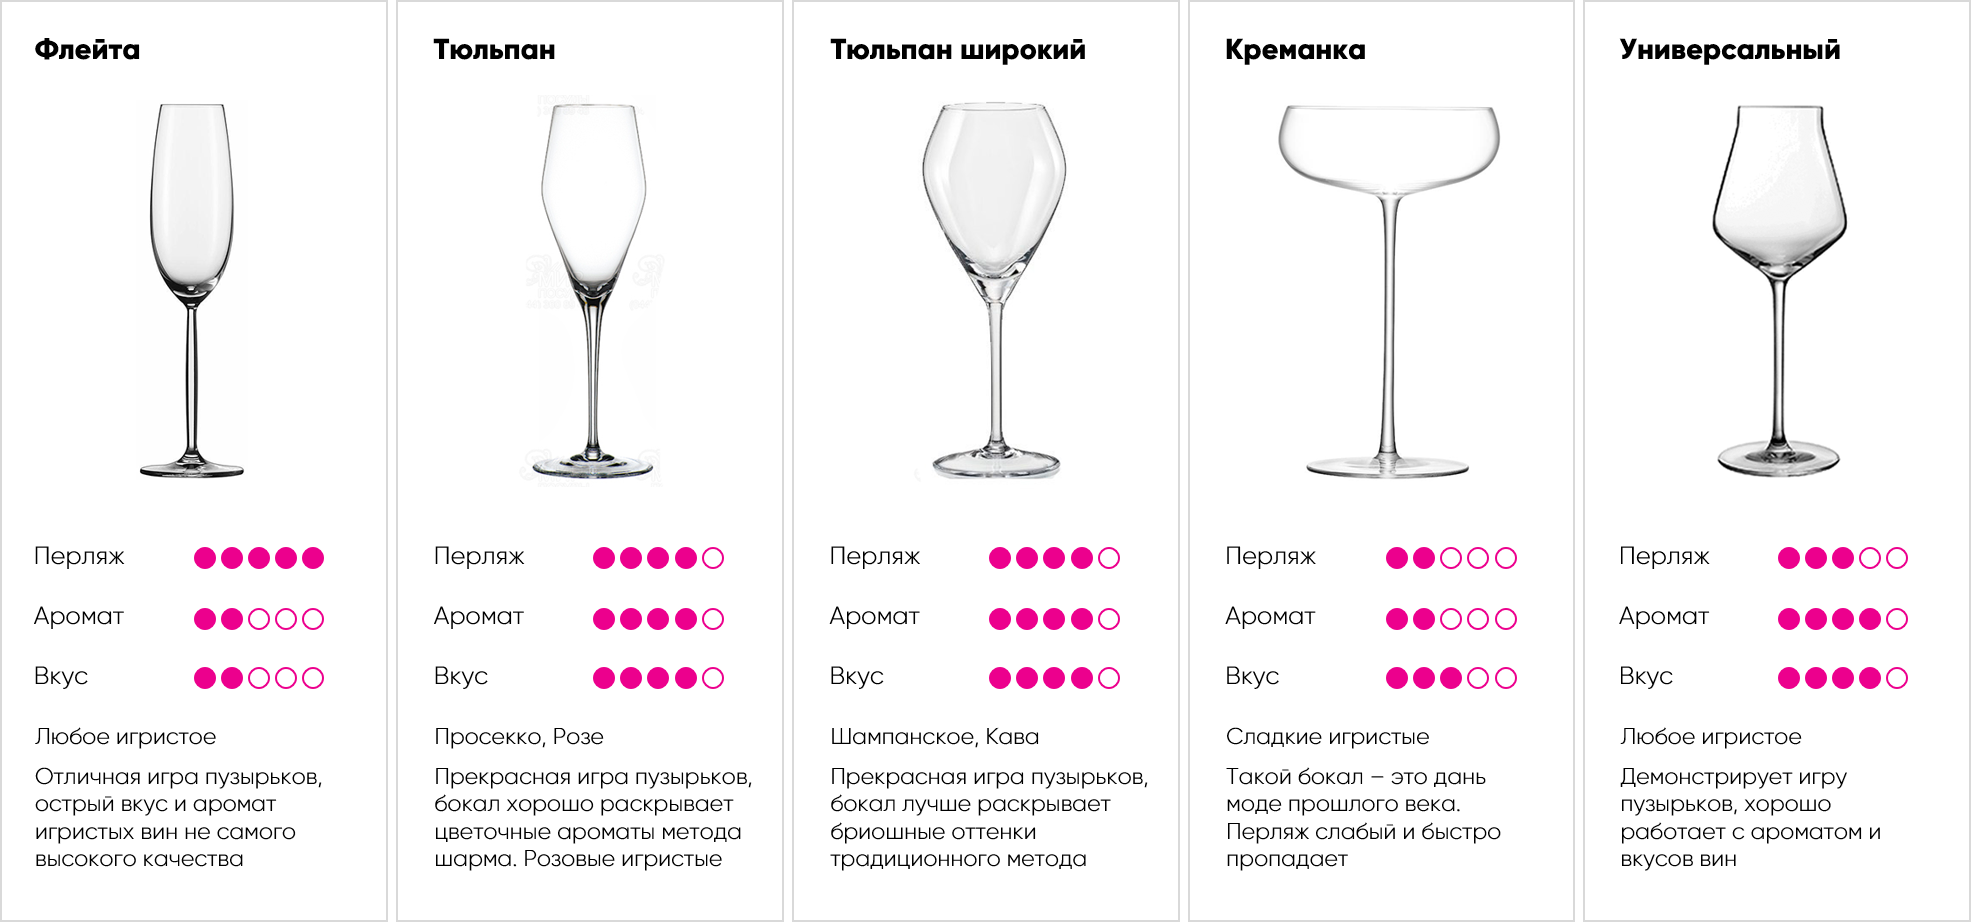 Шампанское сколько грамм. Бокал для шампанского название. Бокалы для игристых вин форма. Размер бокала для шампанского. Бокал для вина название.